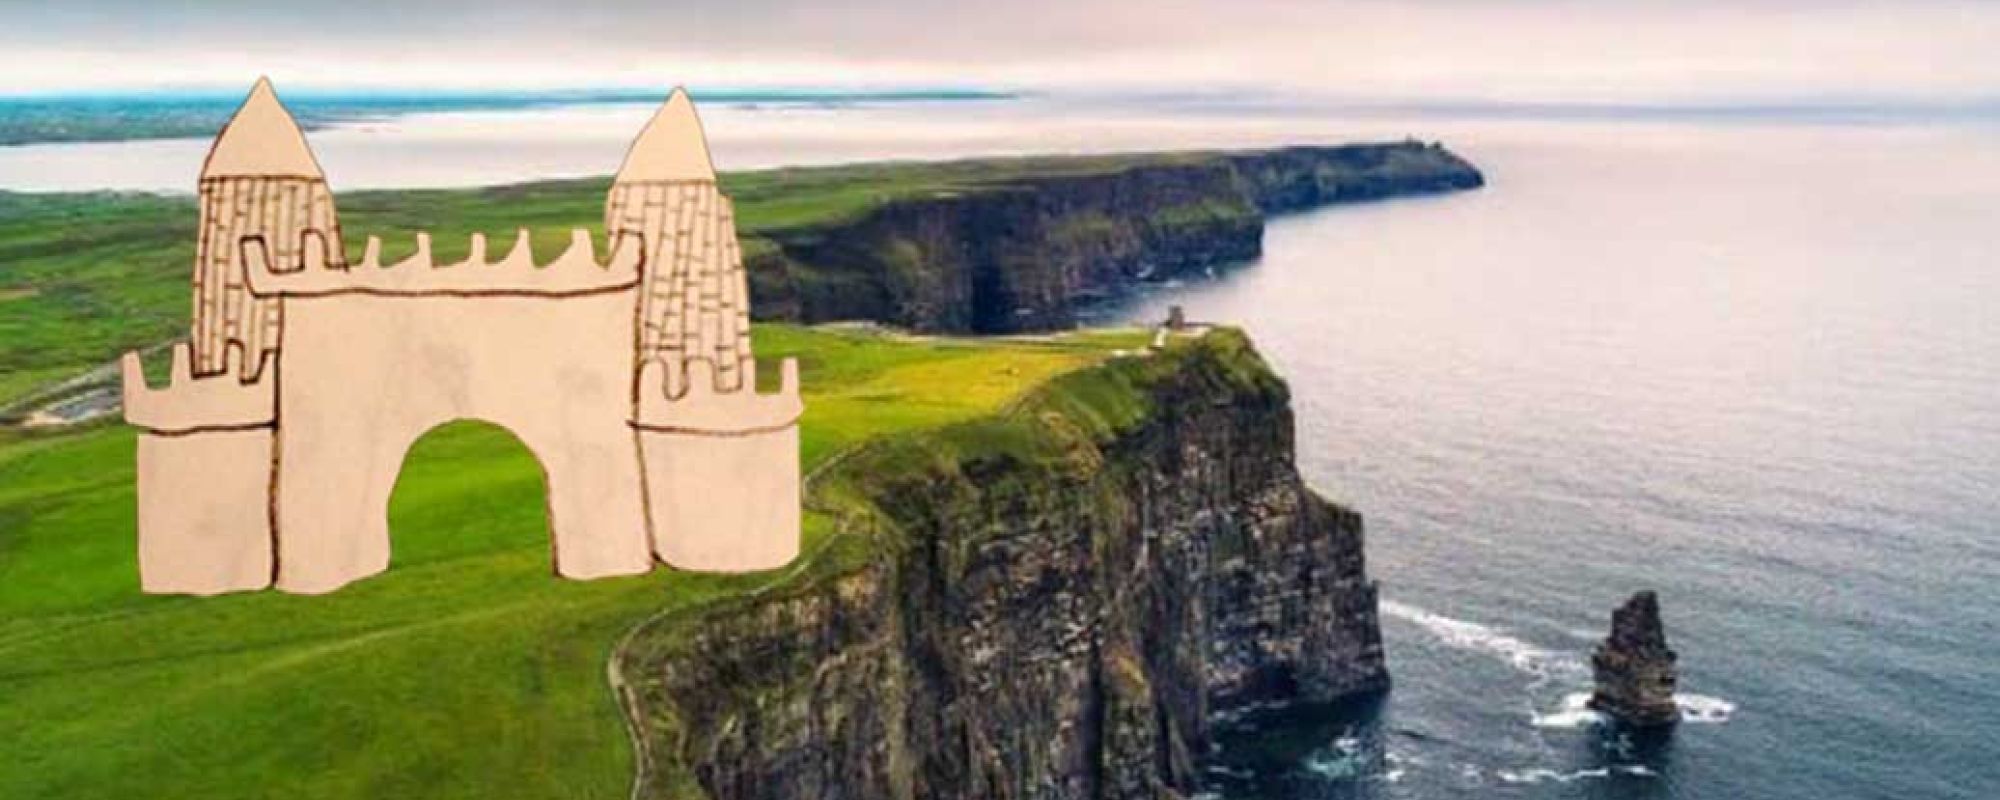 Drawing of castle on Irish coastline